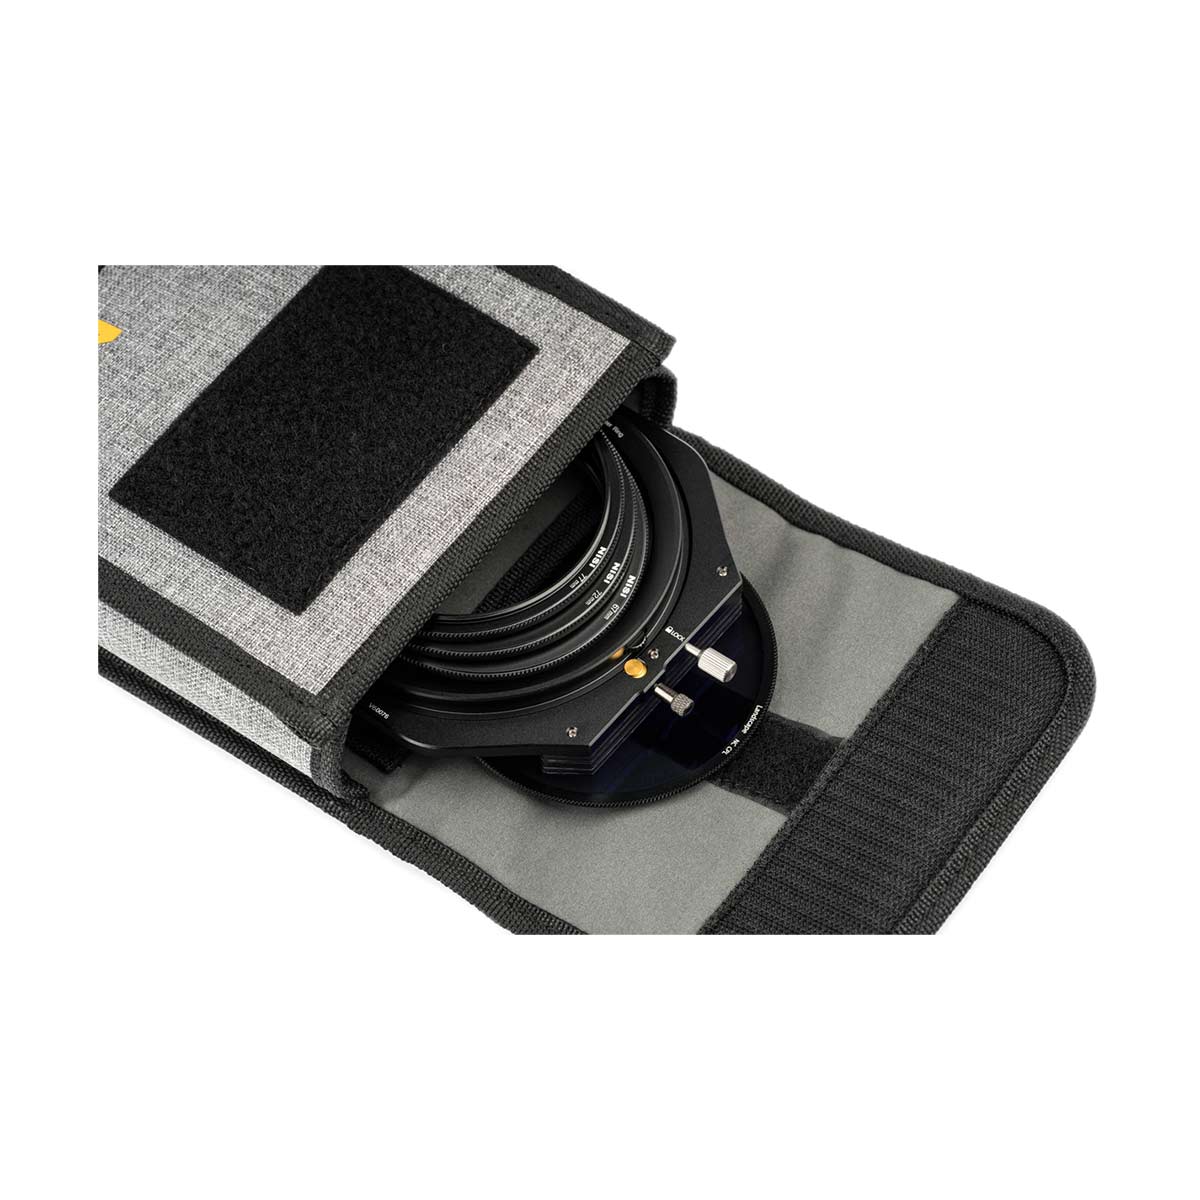 NiSi V6 100mm Filter Holder Kit with Enhanced Landscape Circular Polarizer and Lens Cap